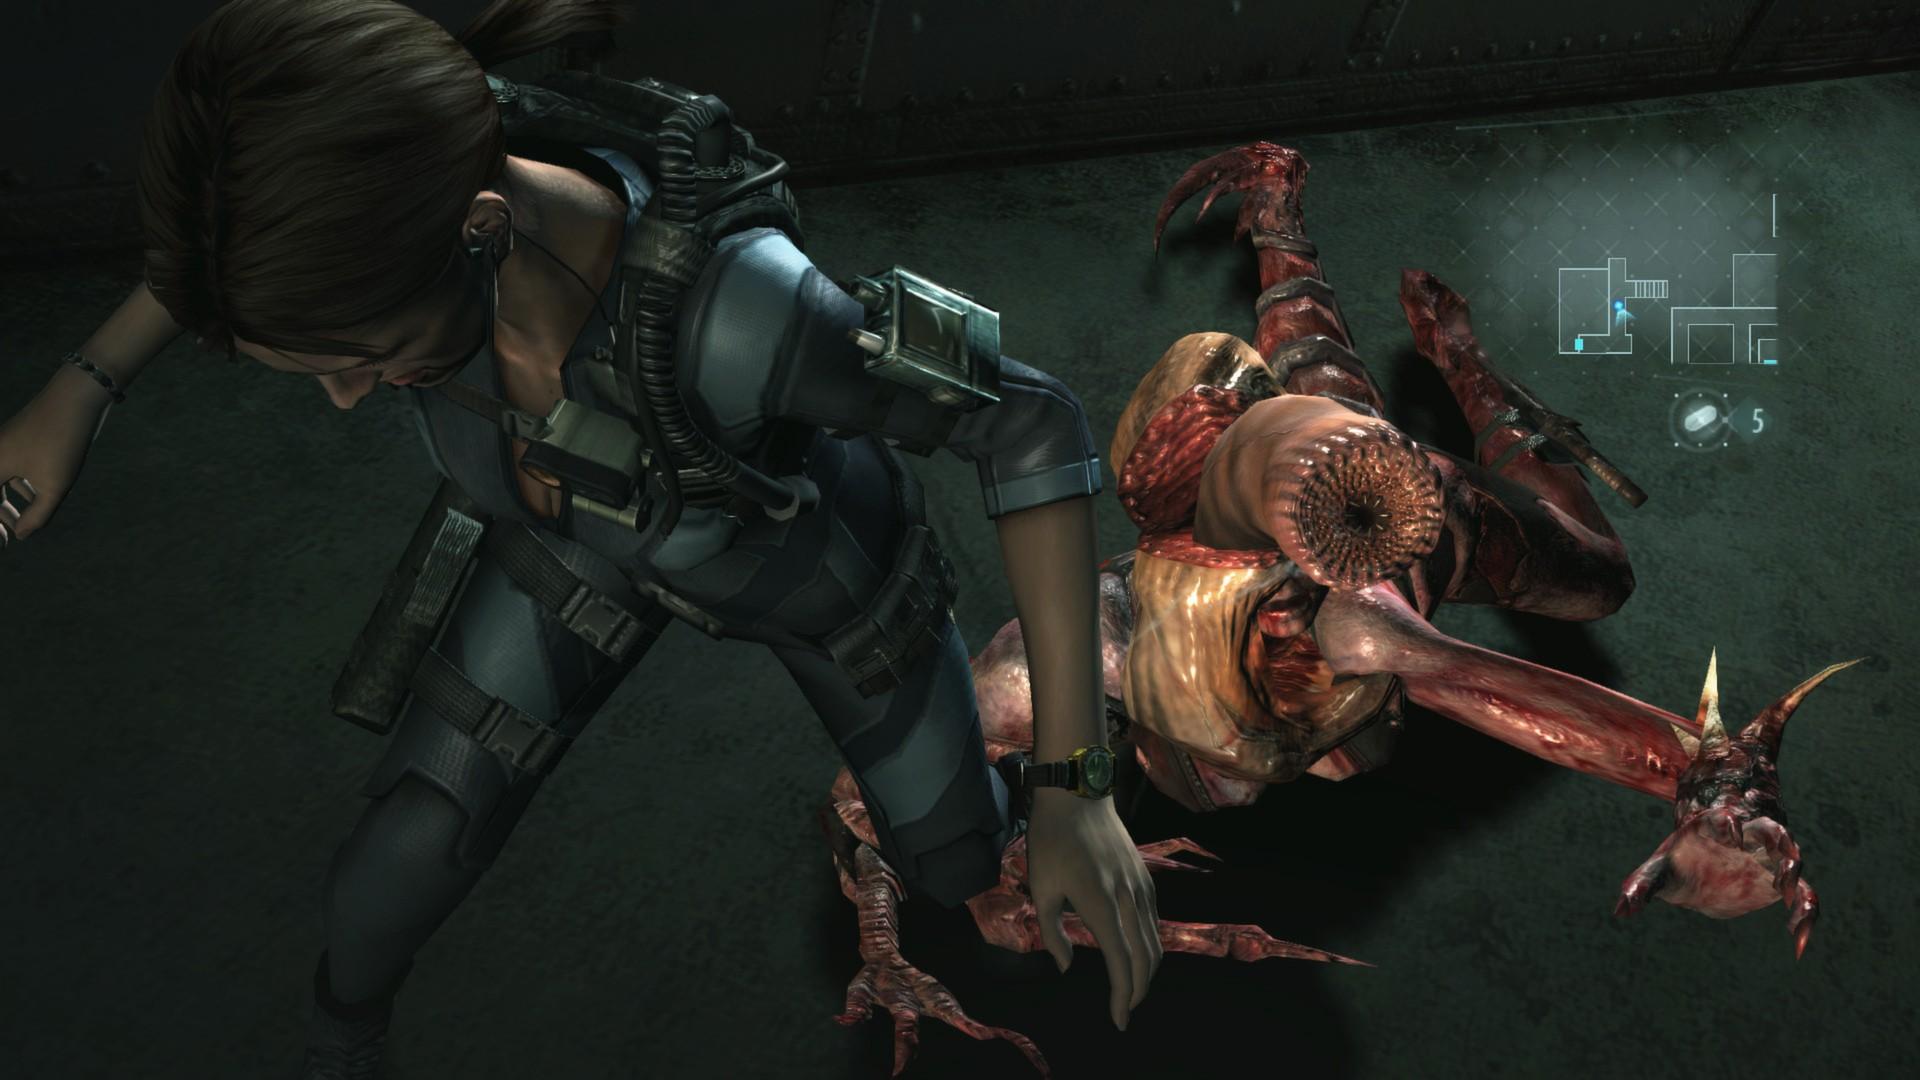 Screenshot №13 from game Resident Evil Revelations